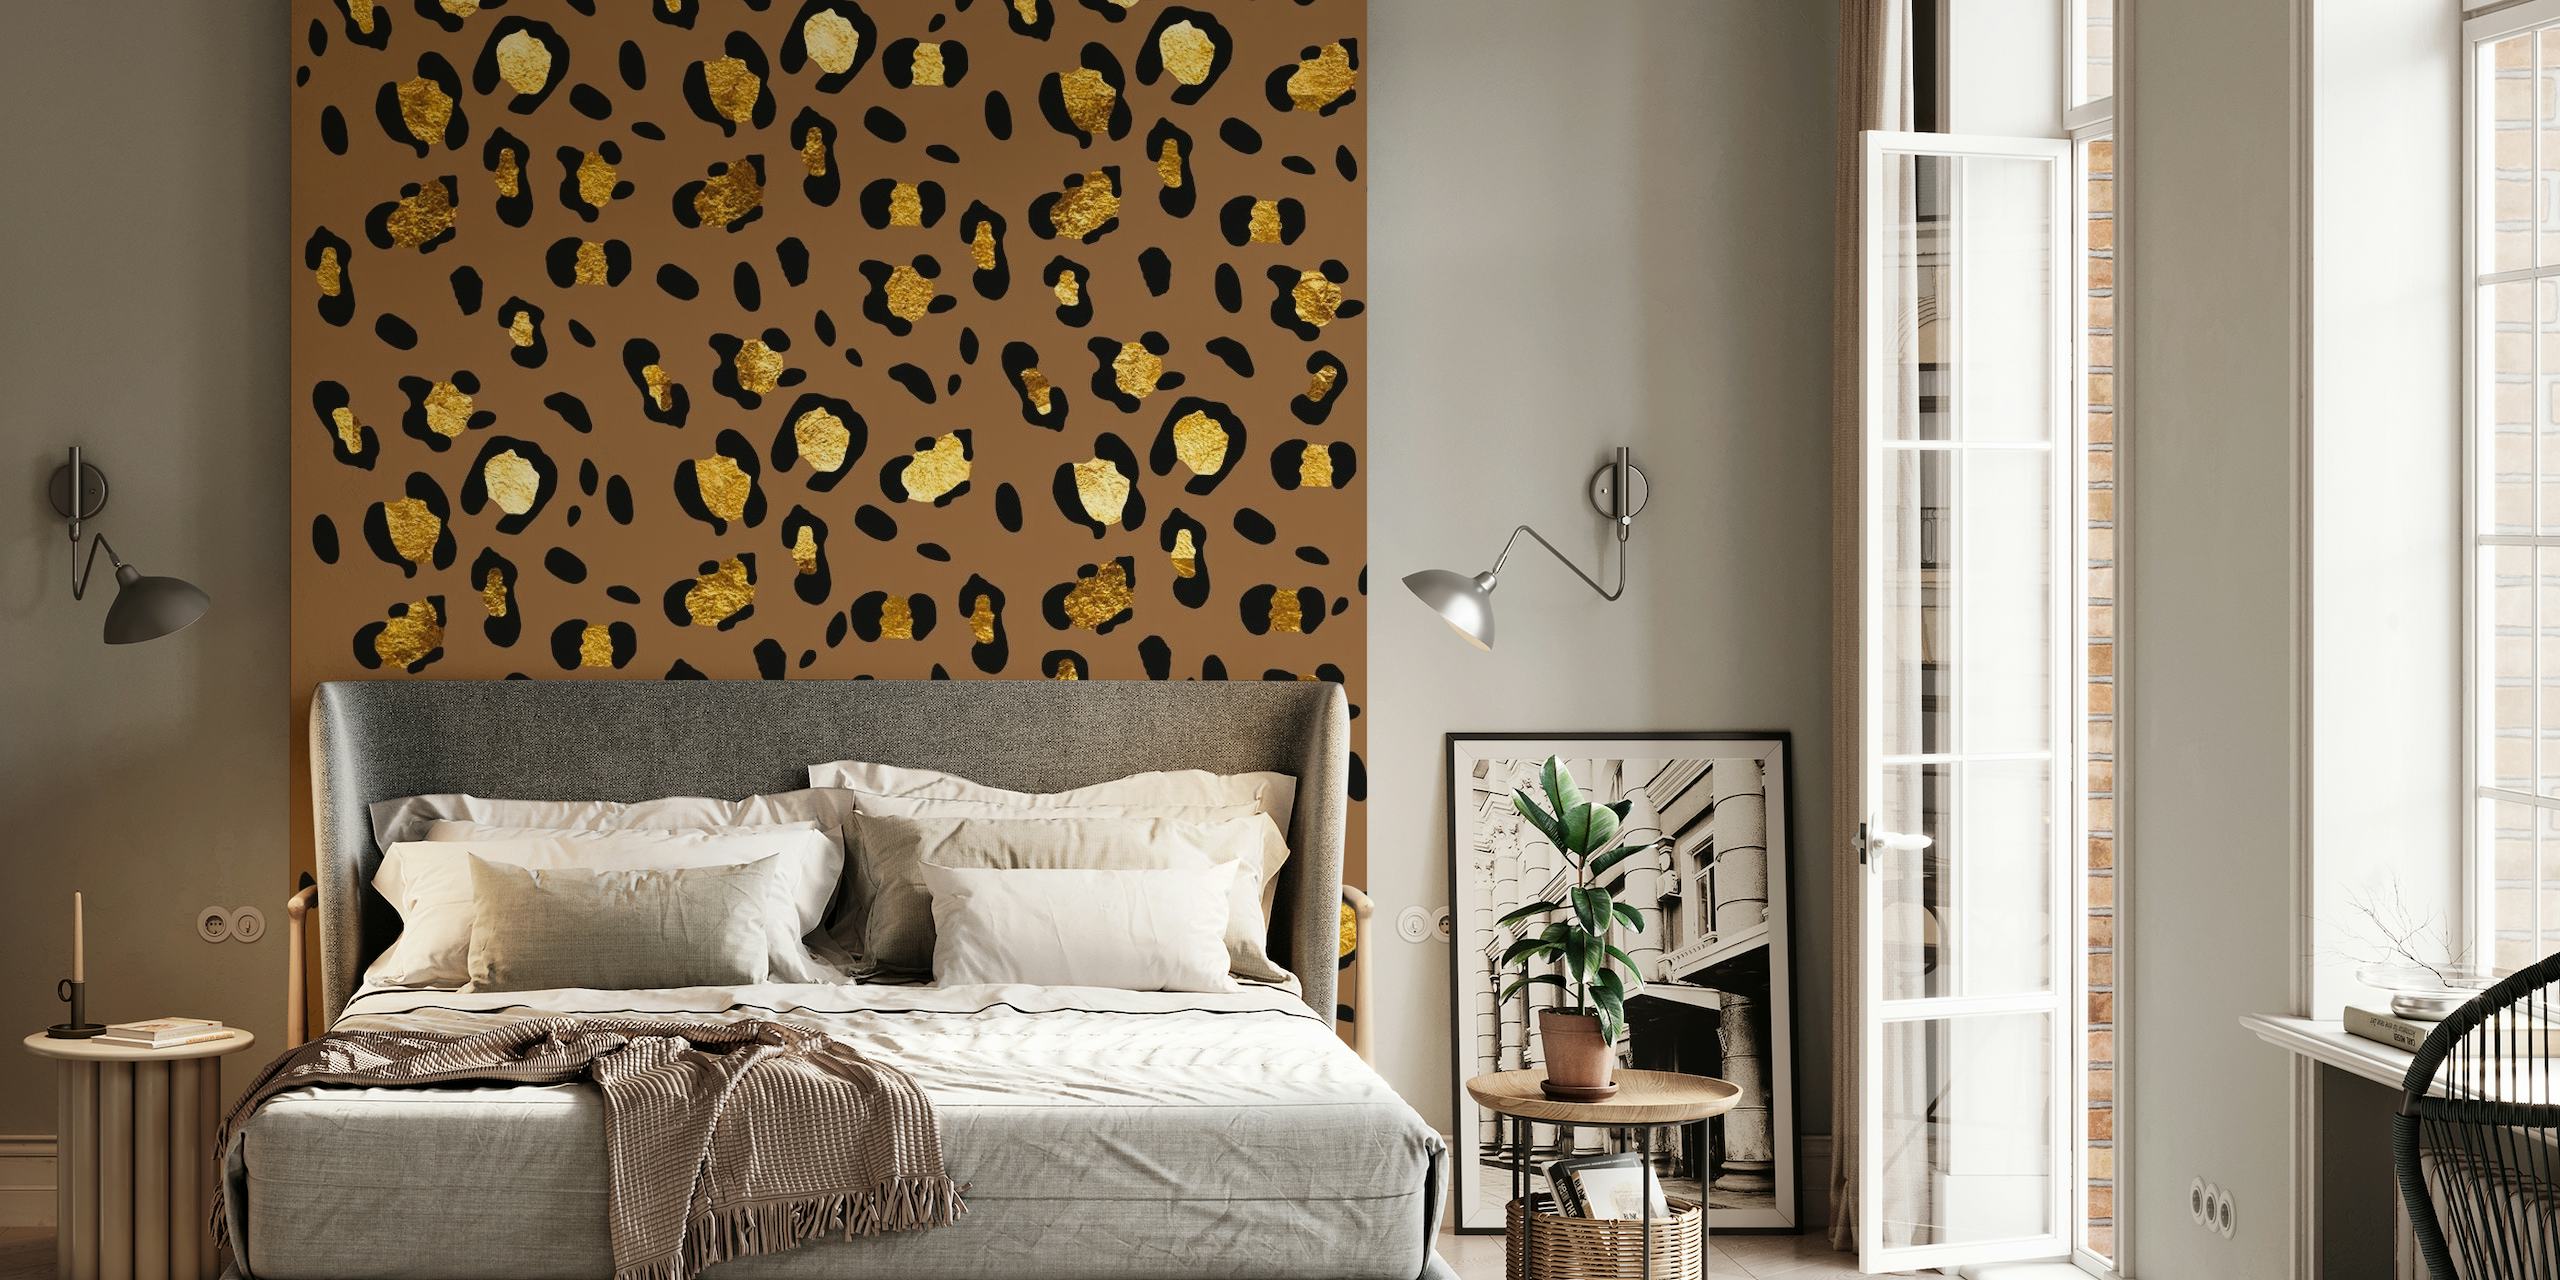 Mural de parede Leopard Animal Print Glam 29 com manchas douradas em um fundo cor de café